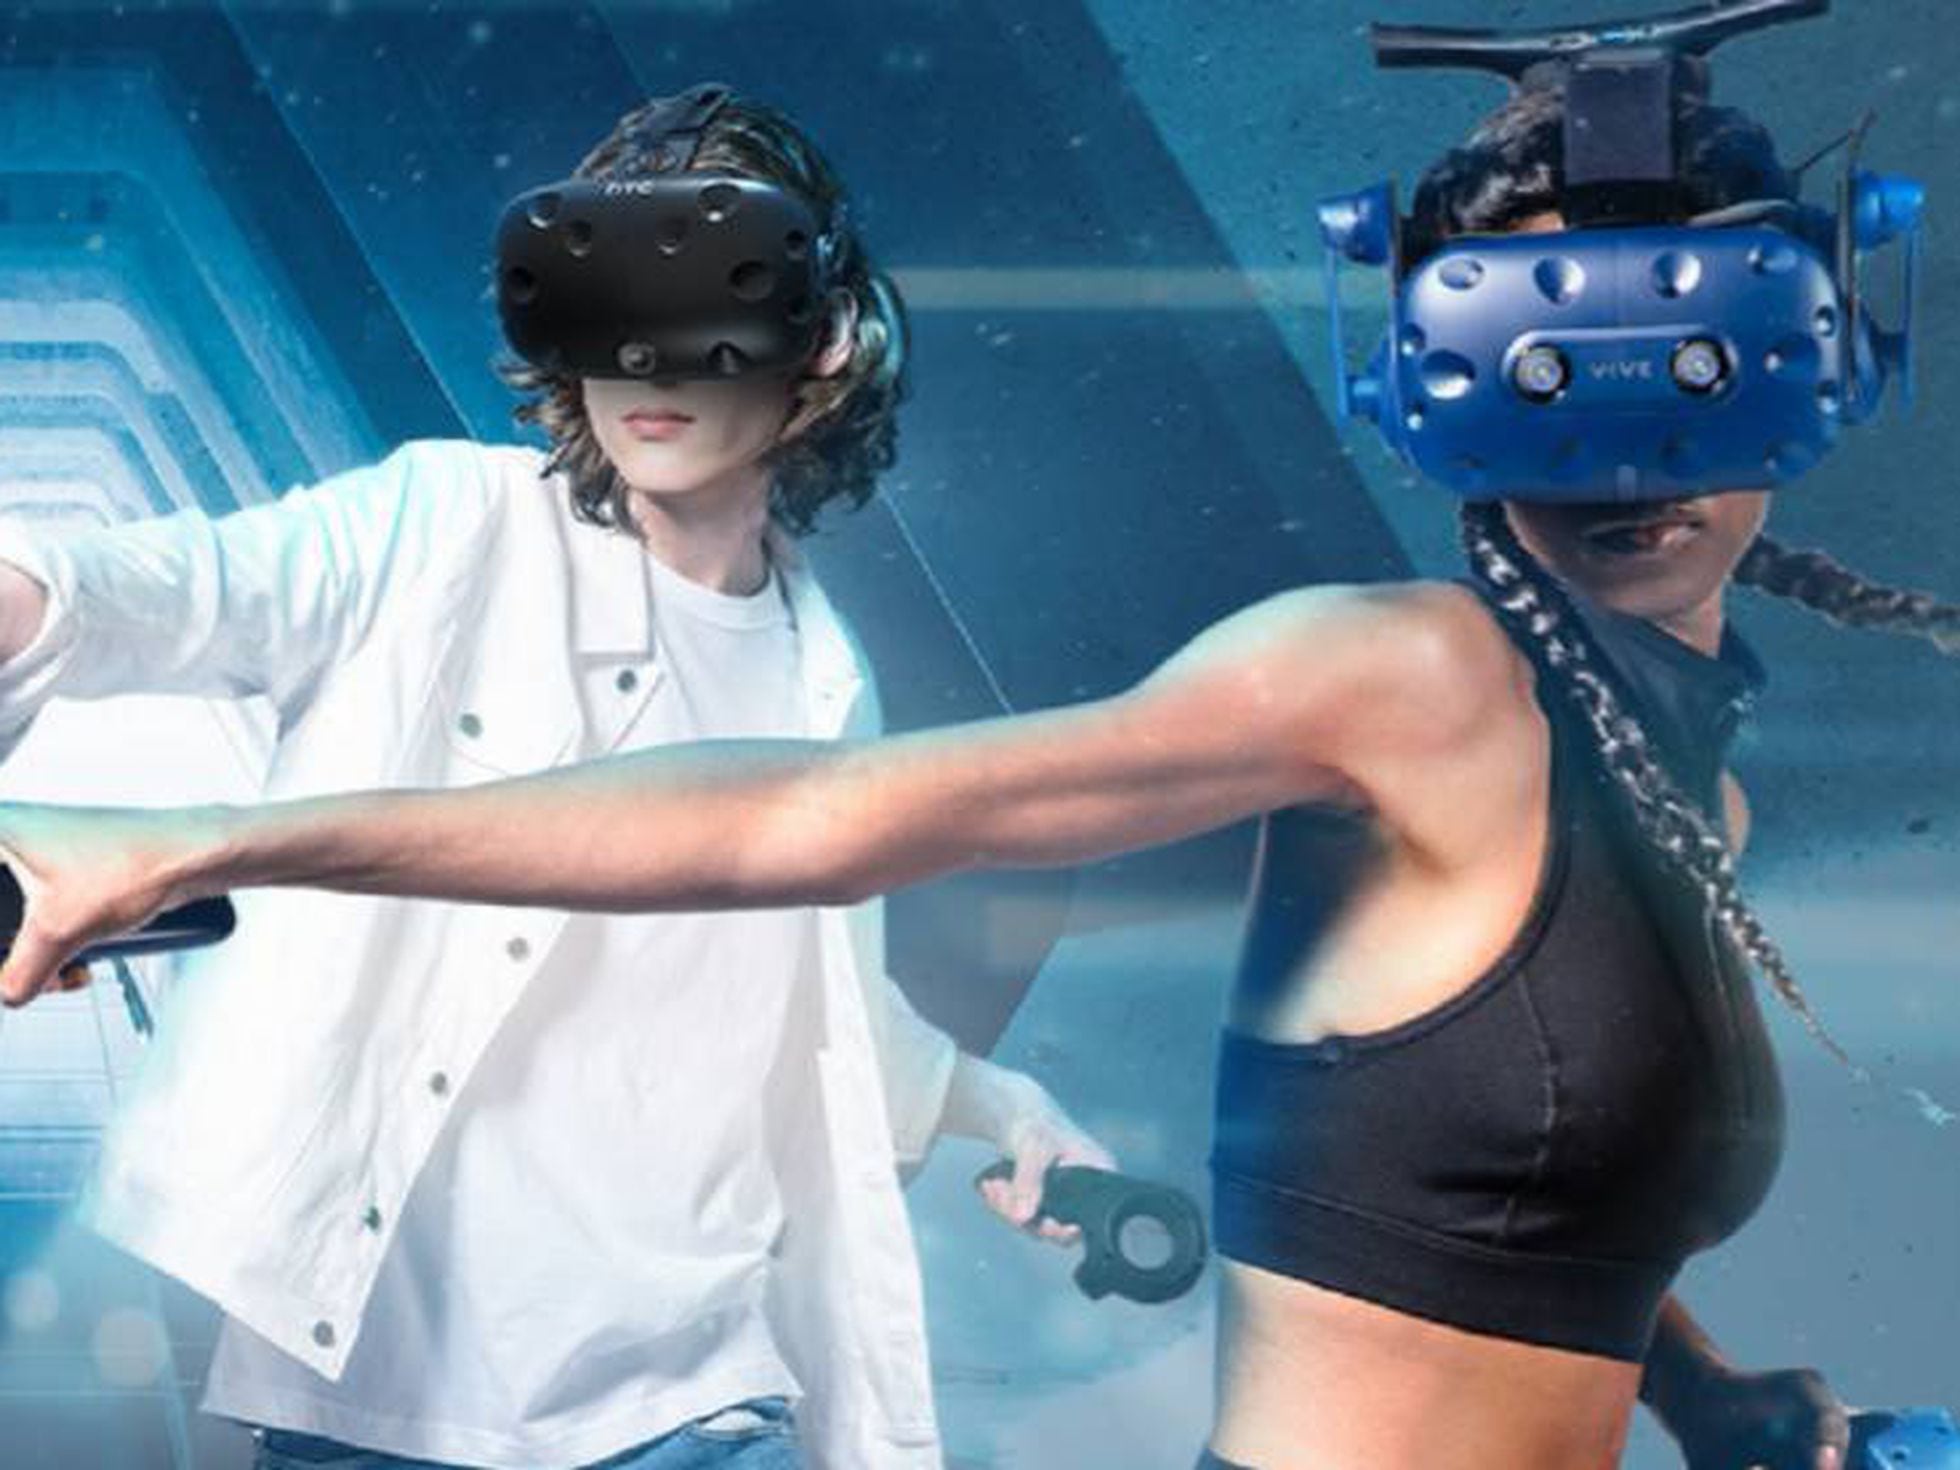 Vive Focus, la realidad virtual sin PC ni móvil en formato de gafas VR